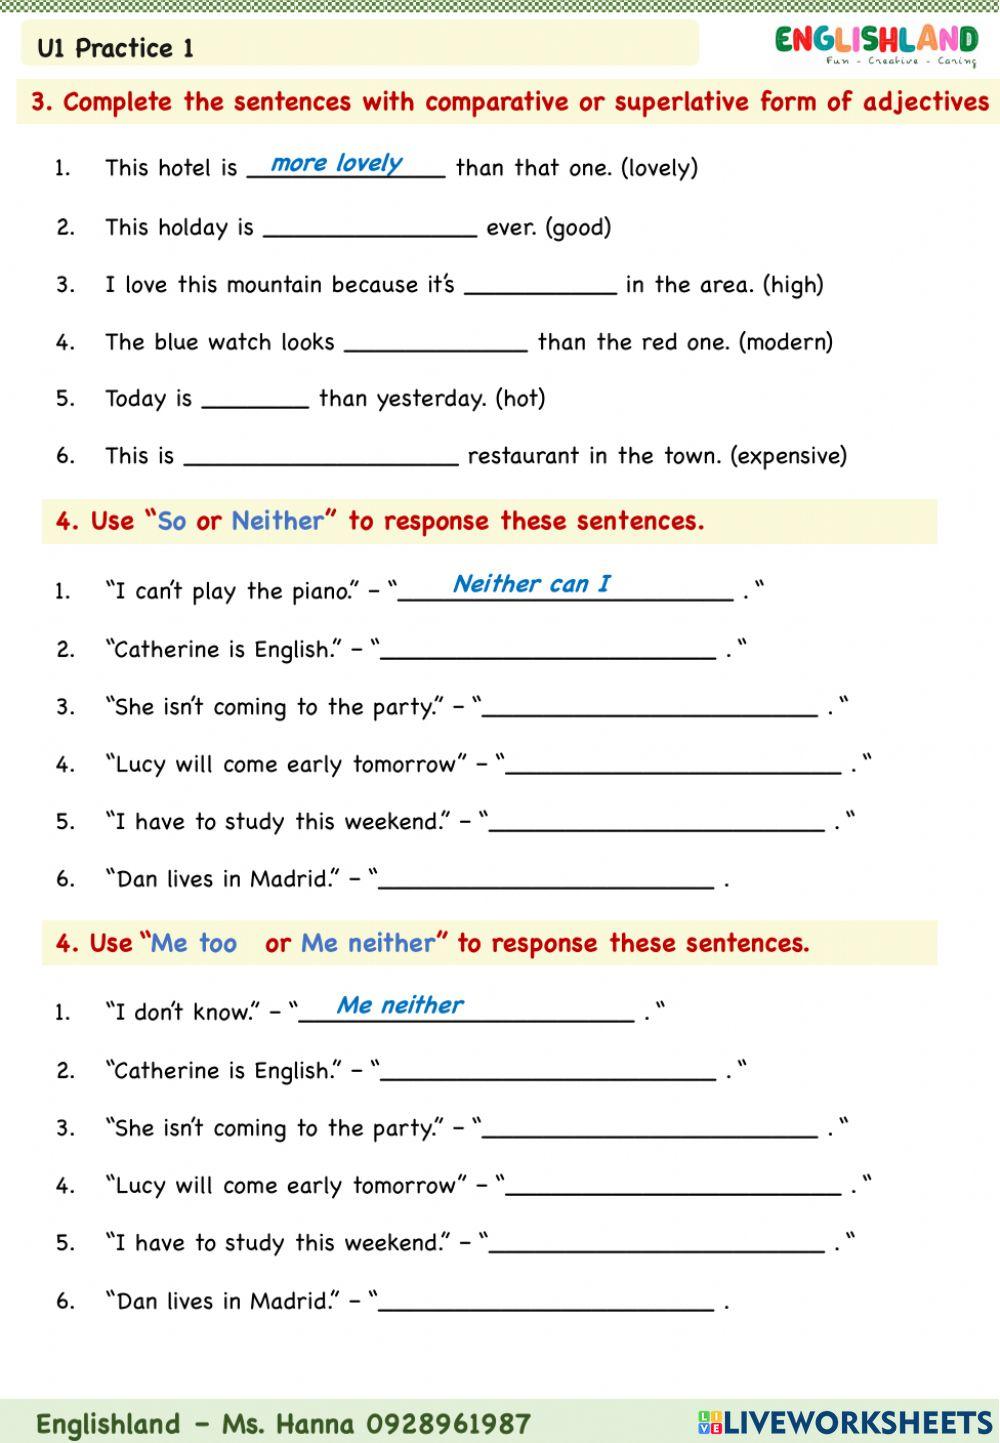 U1 Grammar Practice 1